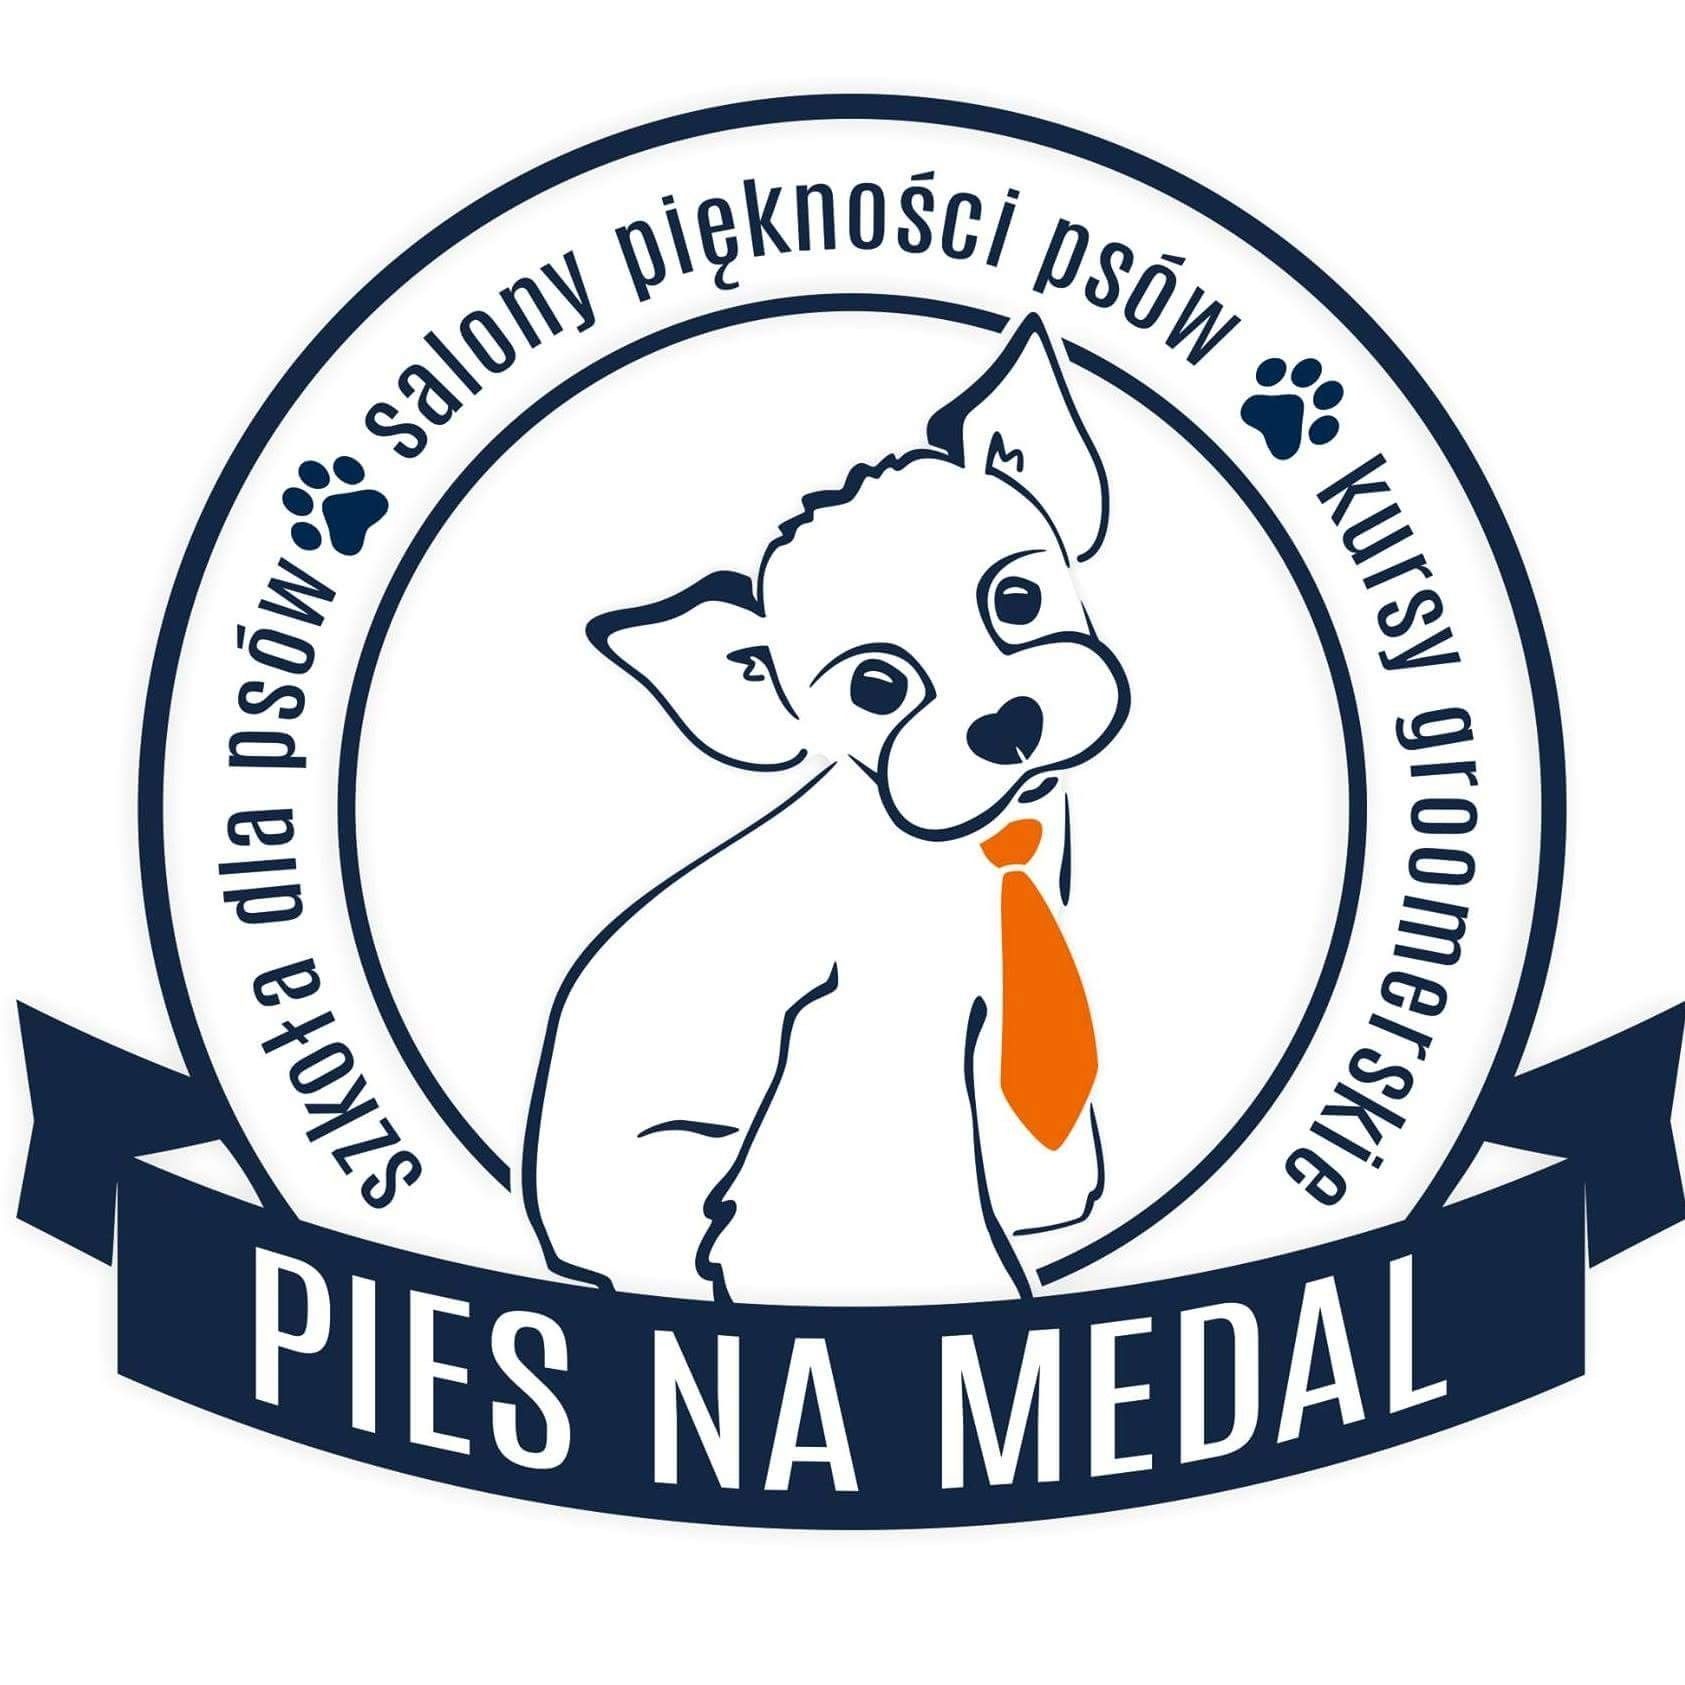 Pies Na Medal- Salon Piękności Psów, Cichy kącik, 6a, 32-091, Michałowice